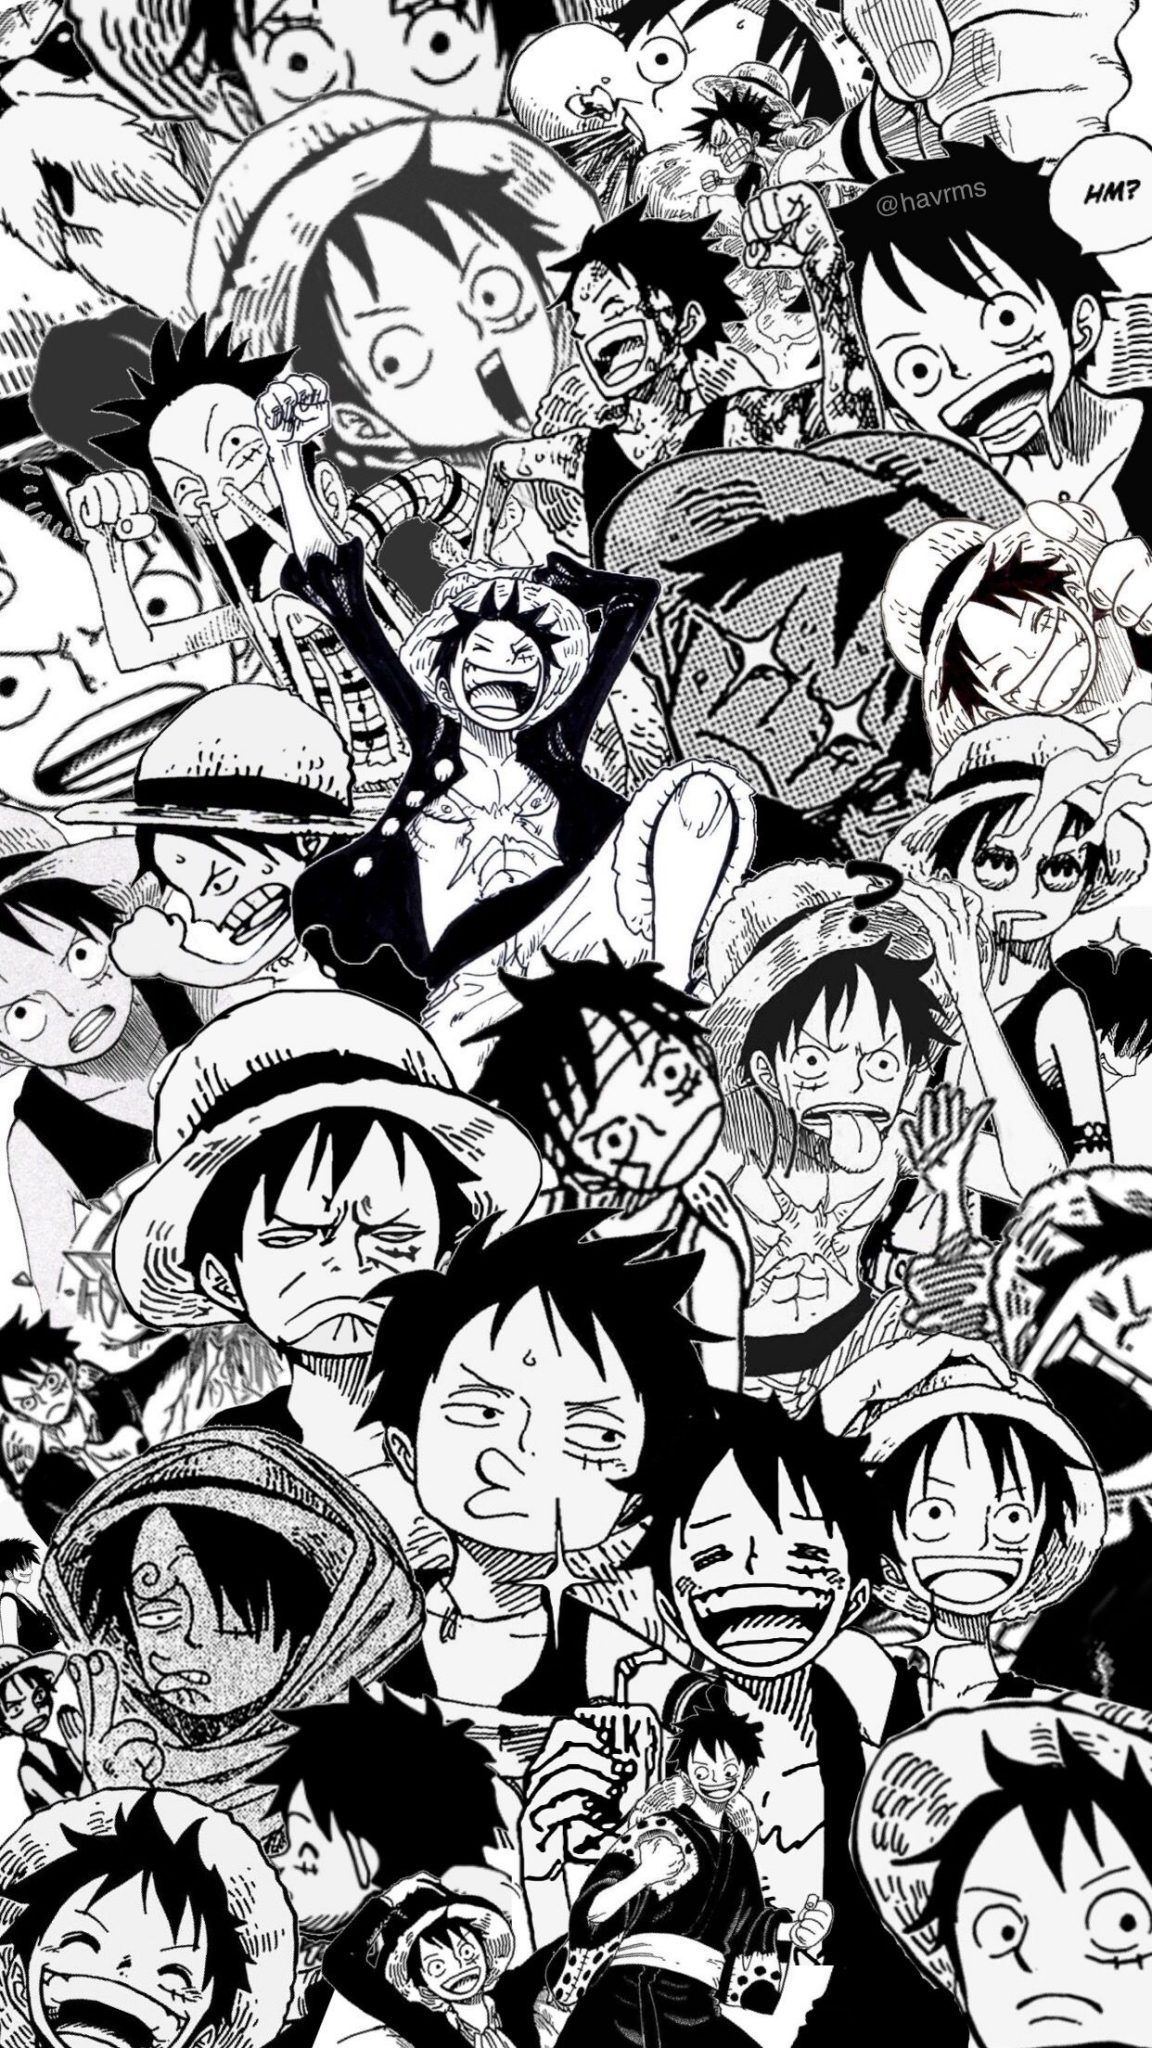 Hình nền One Piece đen trắng đẹp sẽ mang đến cho bạn cảm giác tự tin và đầy sức mạnh. Lựa chọn chúng để trang trí cho máy tính của bạn, bạn sẽ luôn được giữ gìn tinh thần của mình. Hãy xem qua các bức ảnh này ngay để thấy được sự đẹp đến từng chi tiết.